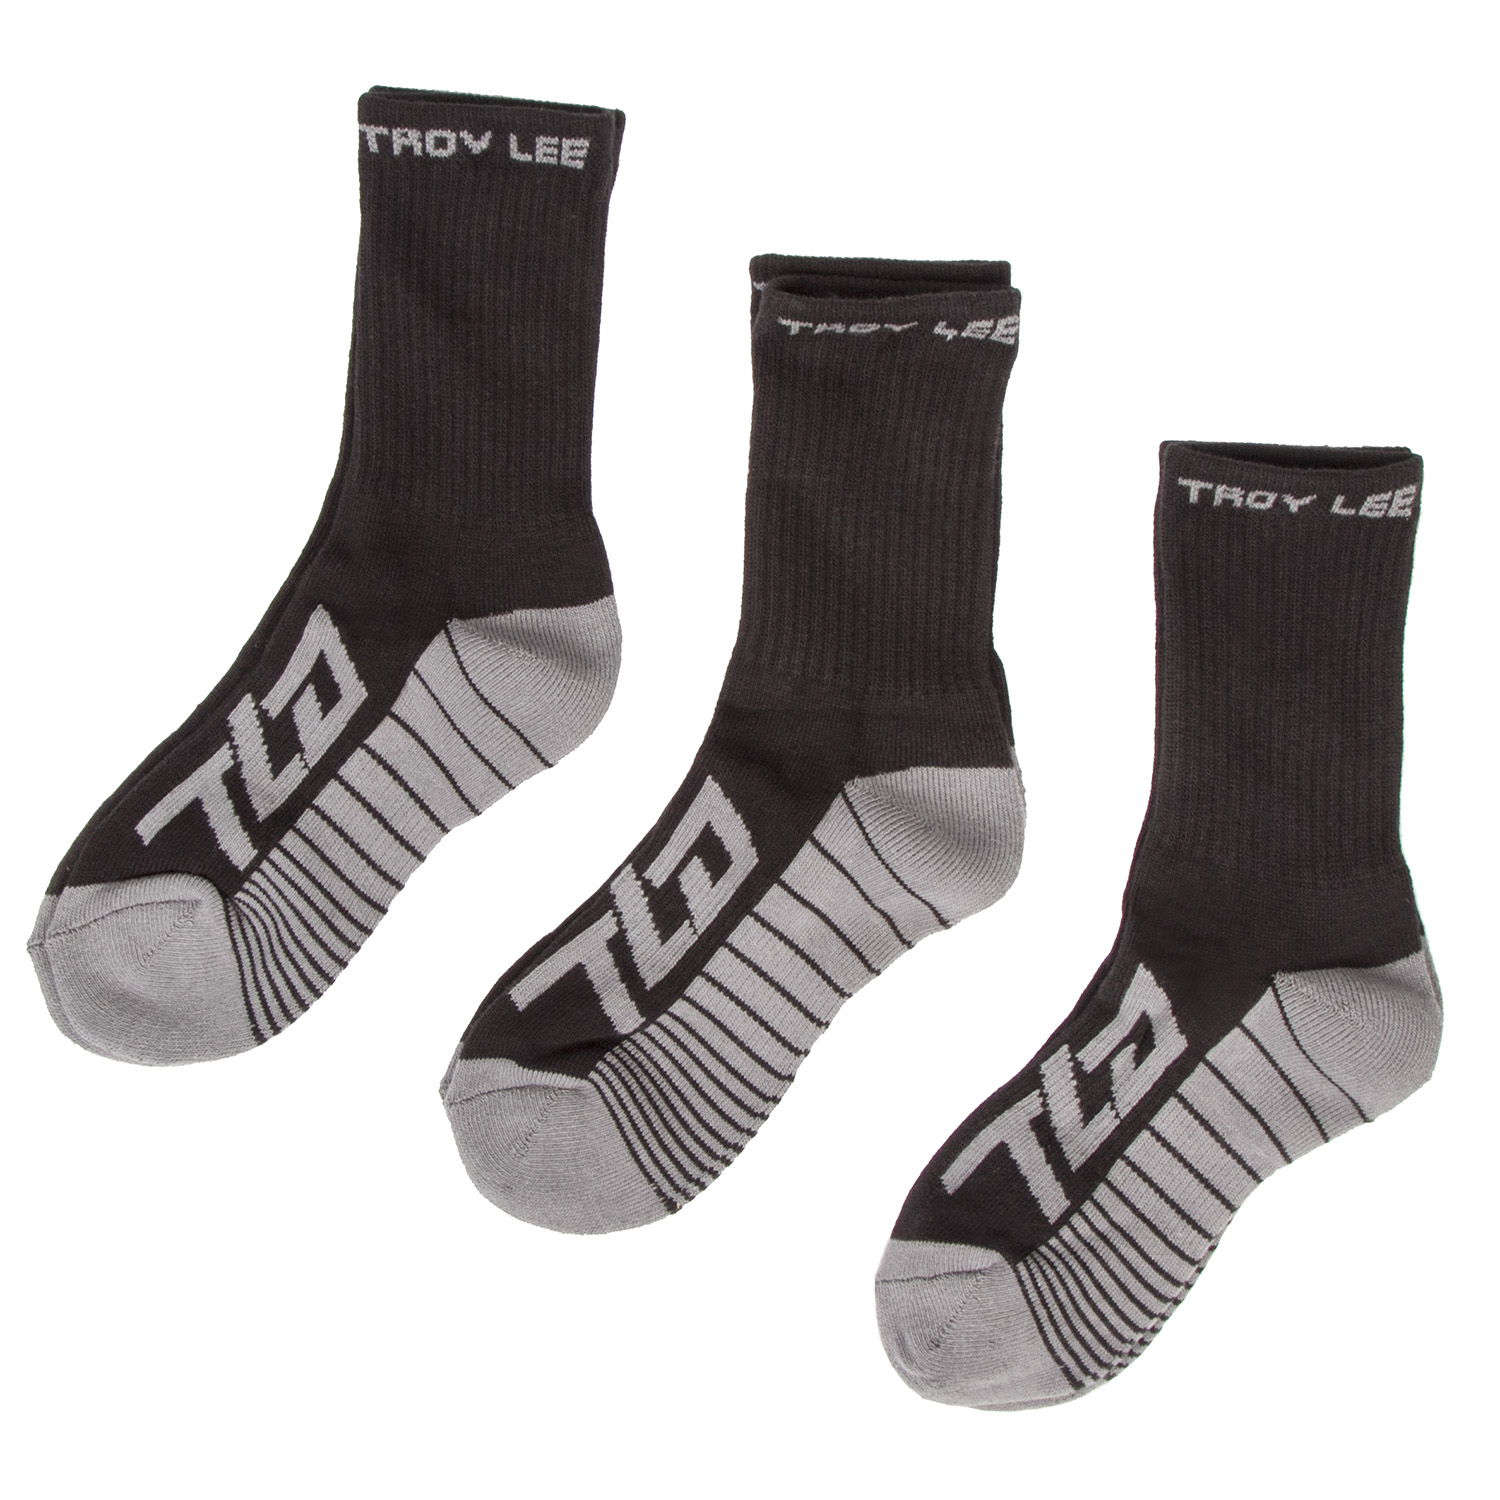 Troy Lee Designs Socks Factory Crew Black, 3 Pack